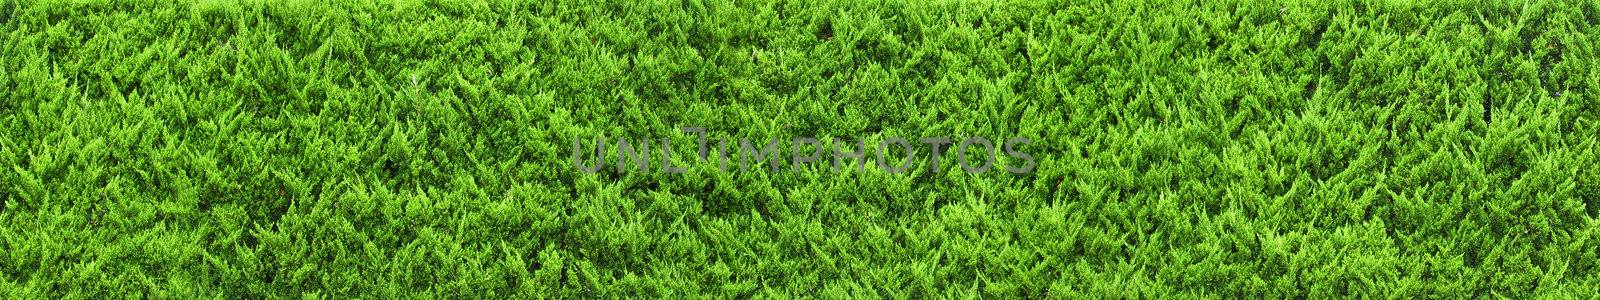 green grass by ozaiachin